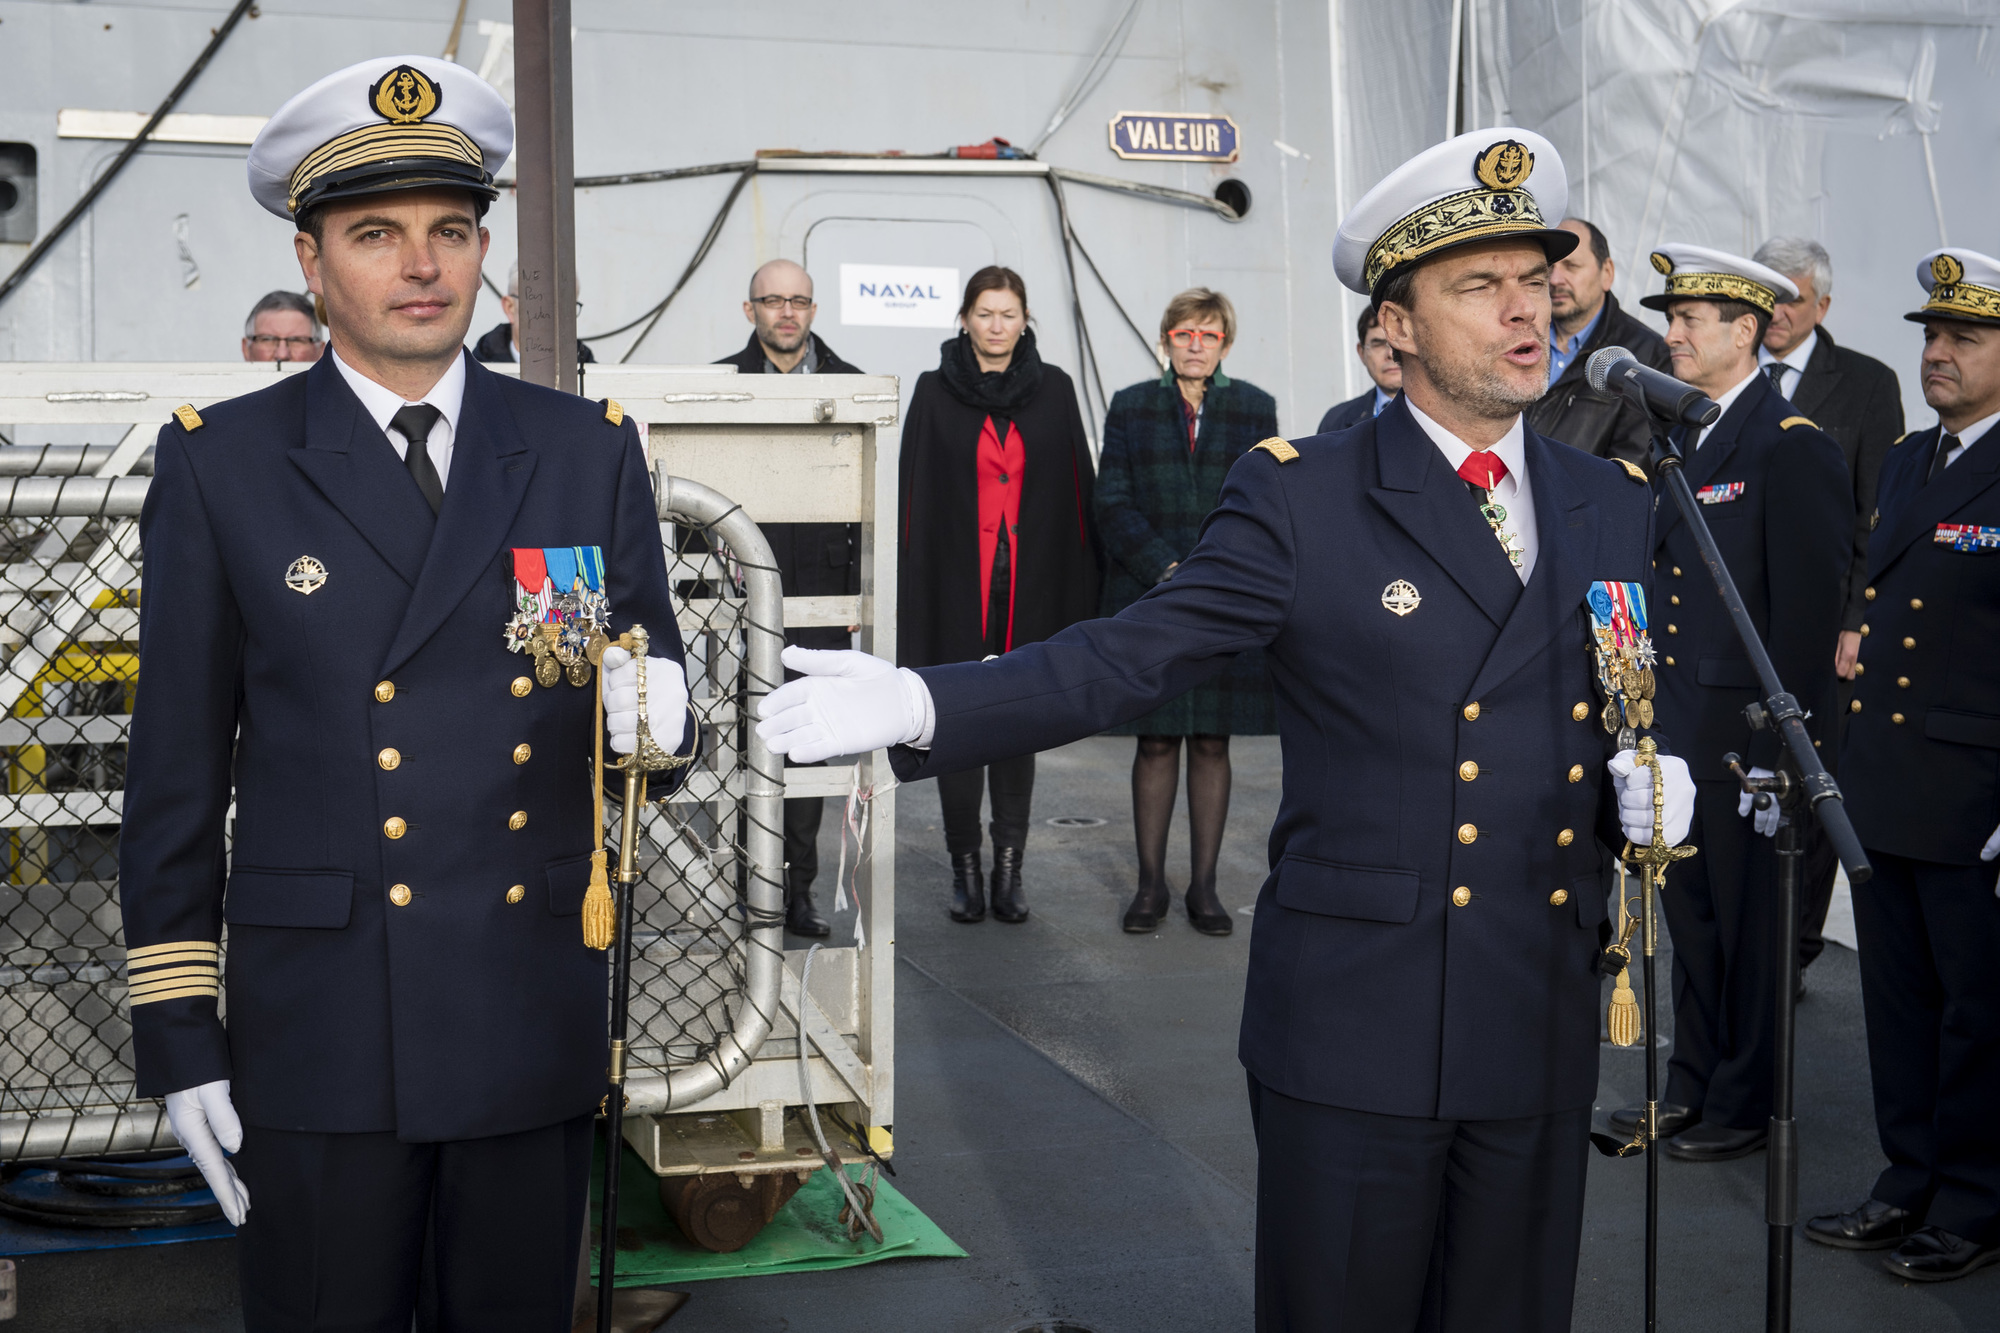 Le capitaine de vaisseau Soubrier reconnu commandant de la Normandie par le vice-amiral d’escadre Rolland, ALFAN